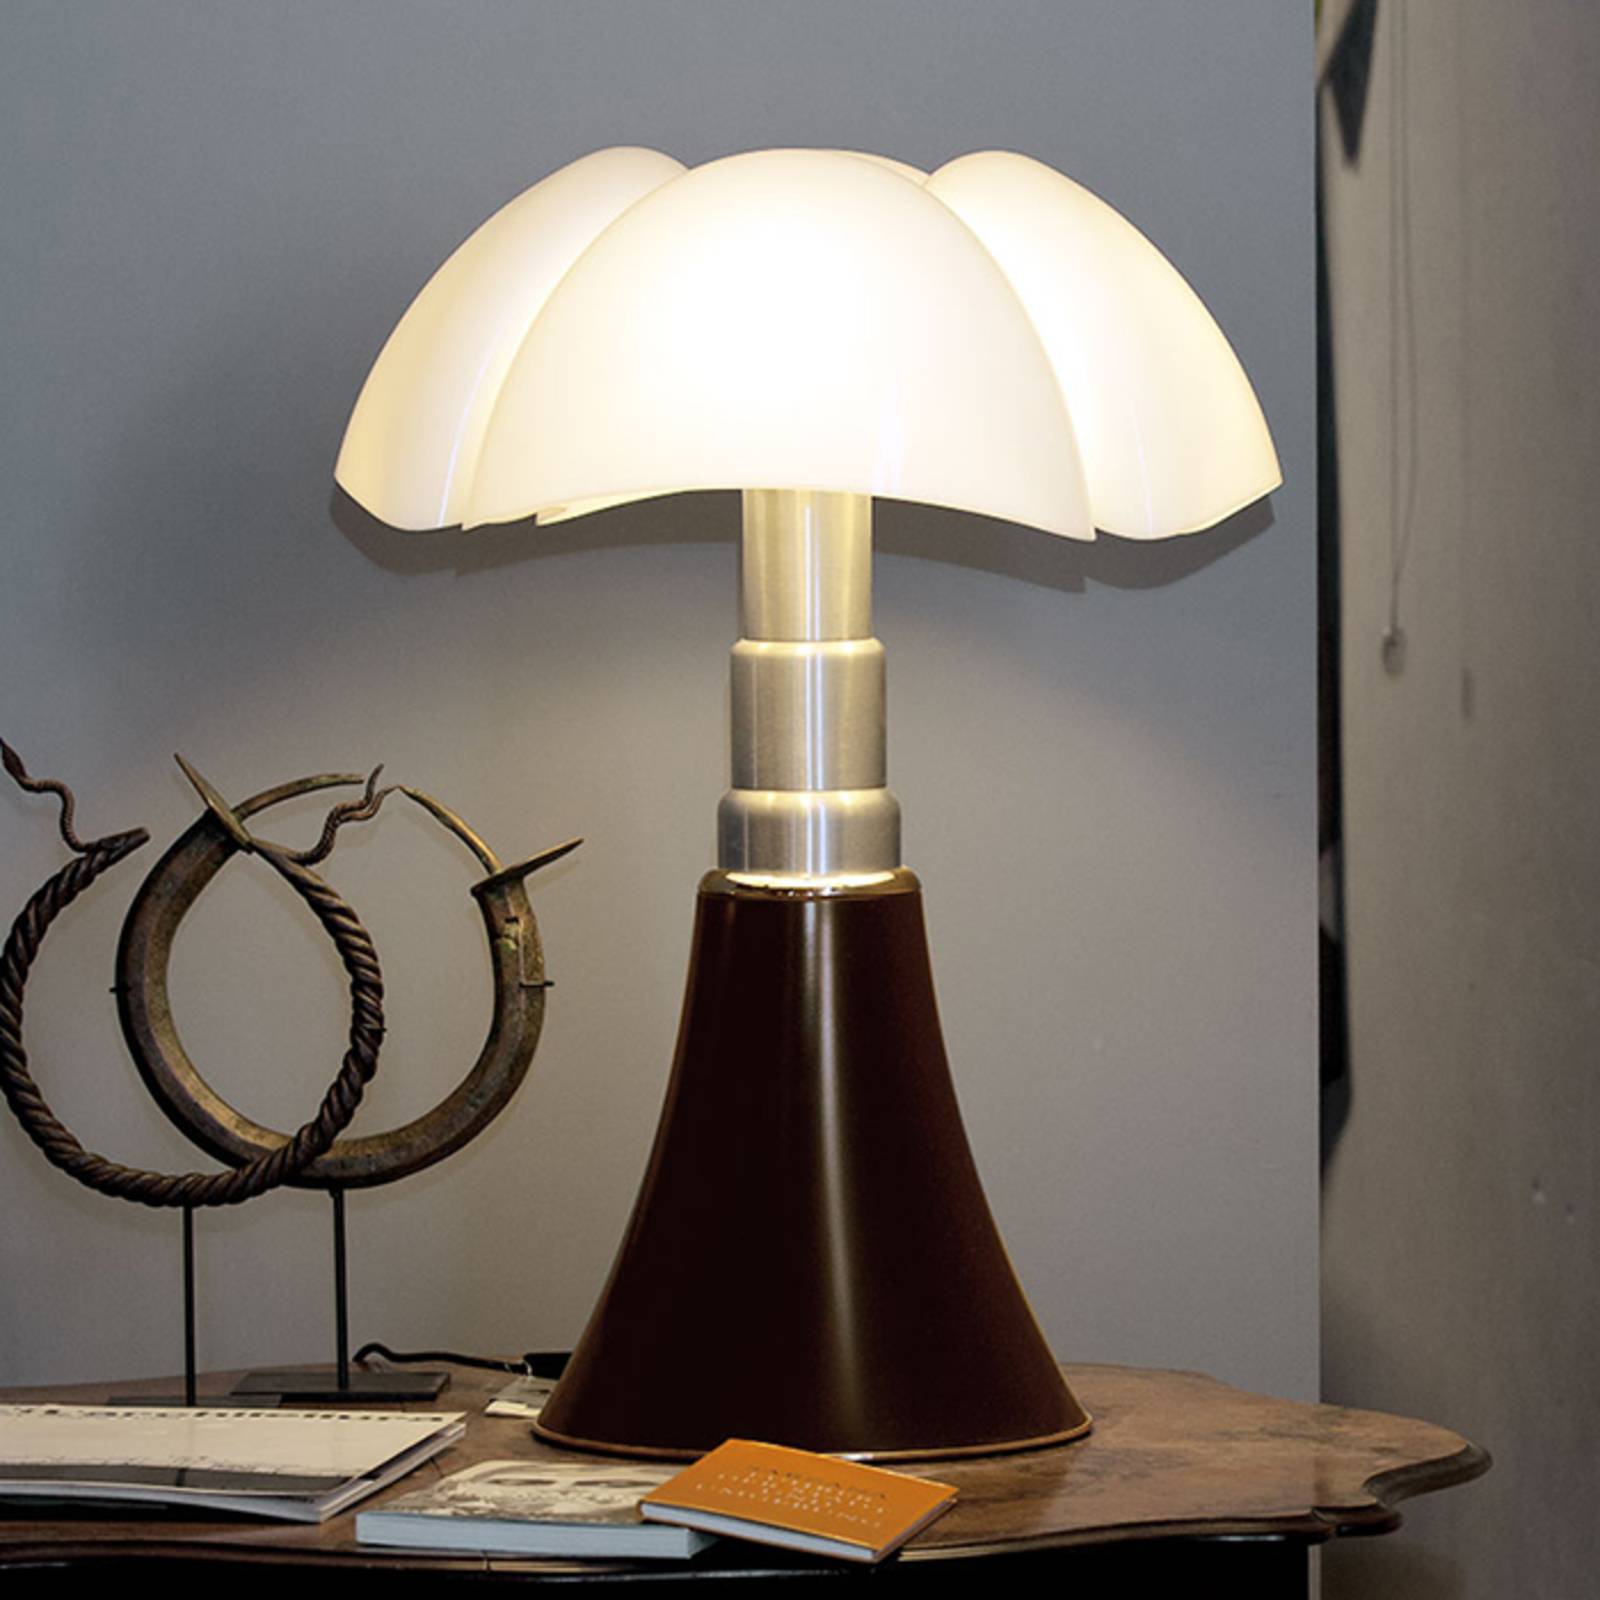 Image of Lampe à poser à hauteur réglable PIPISTRELLO brun 8033383018517